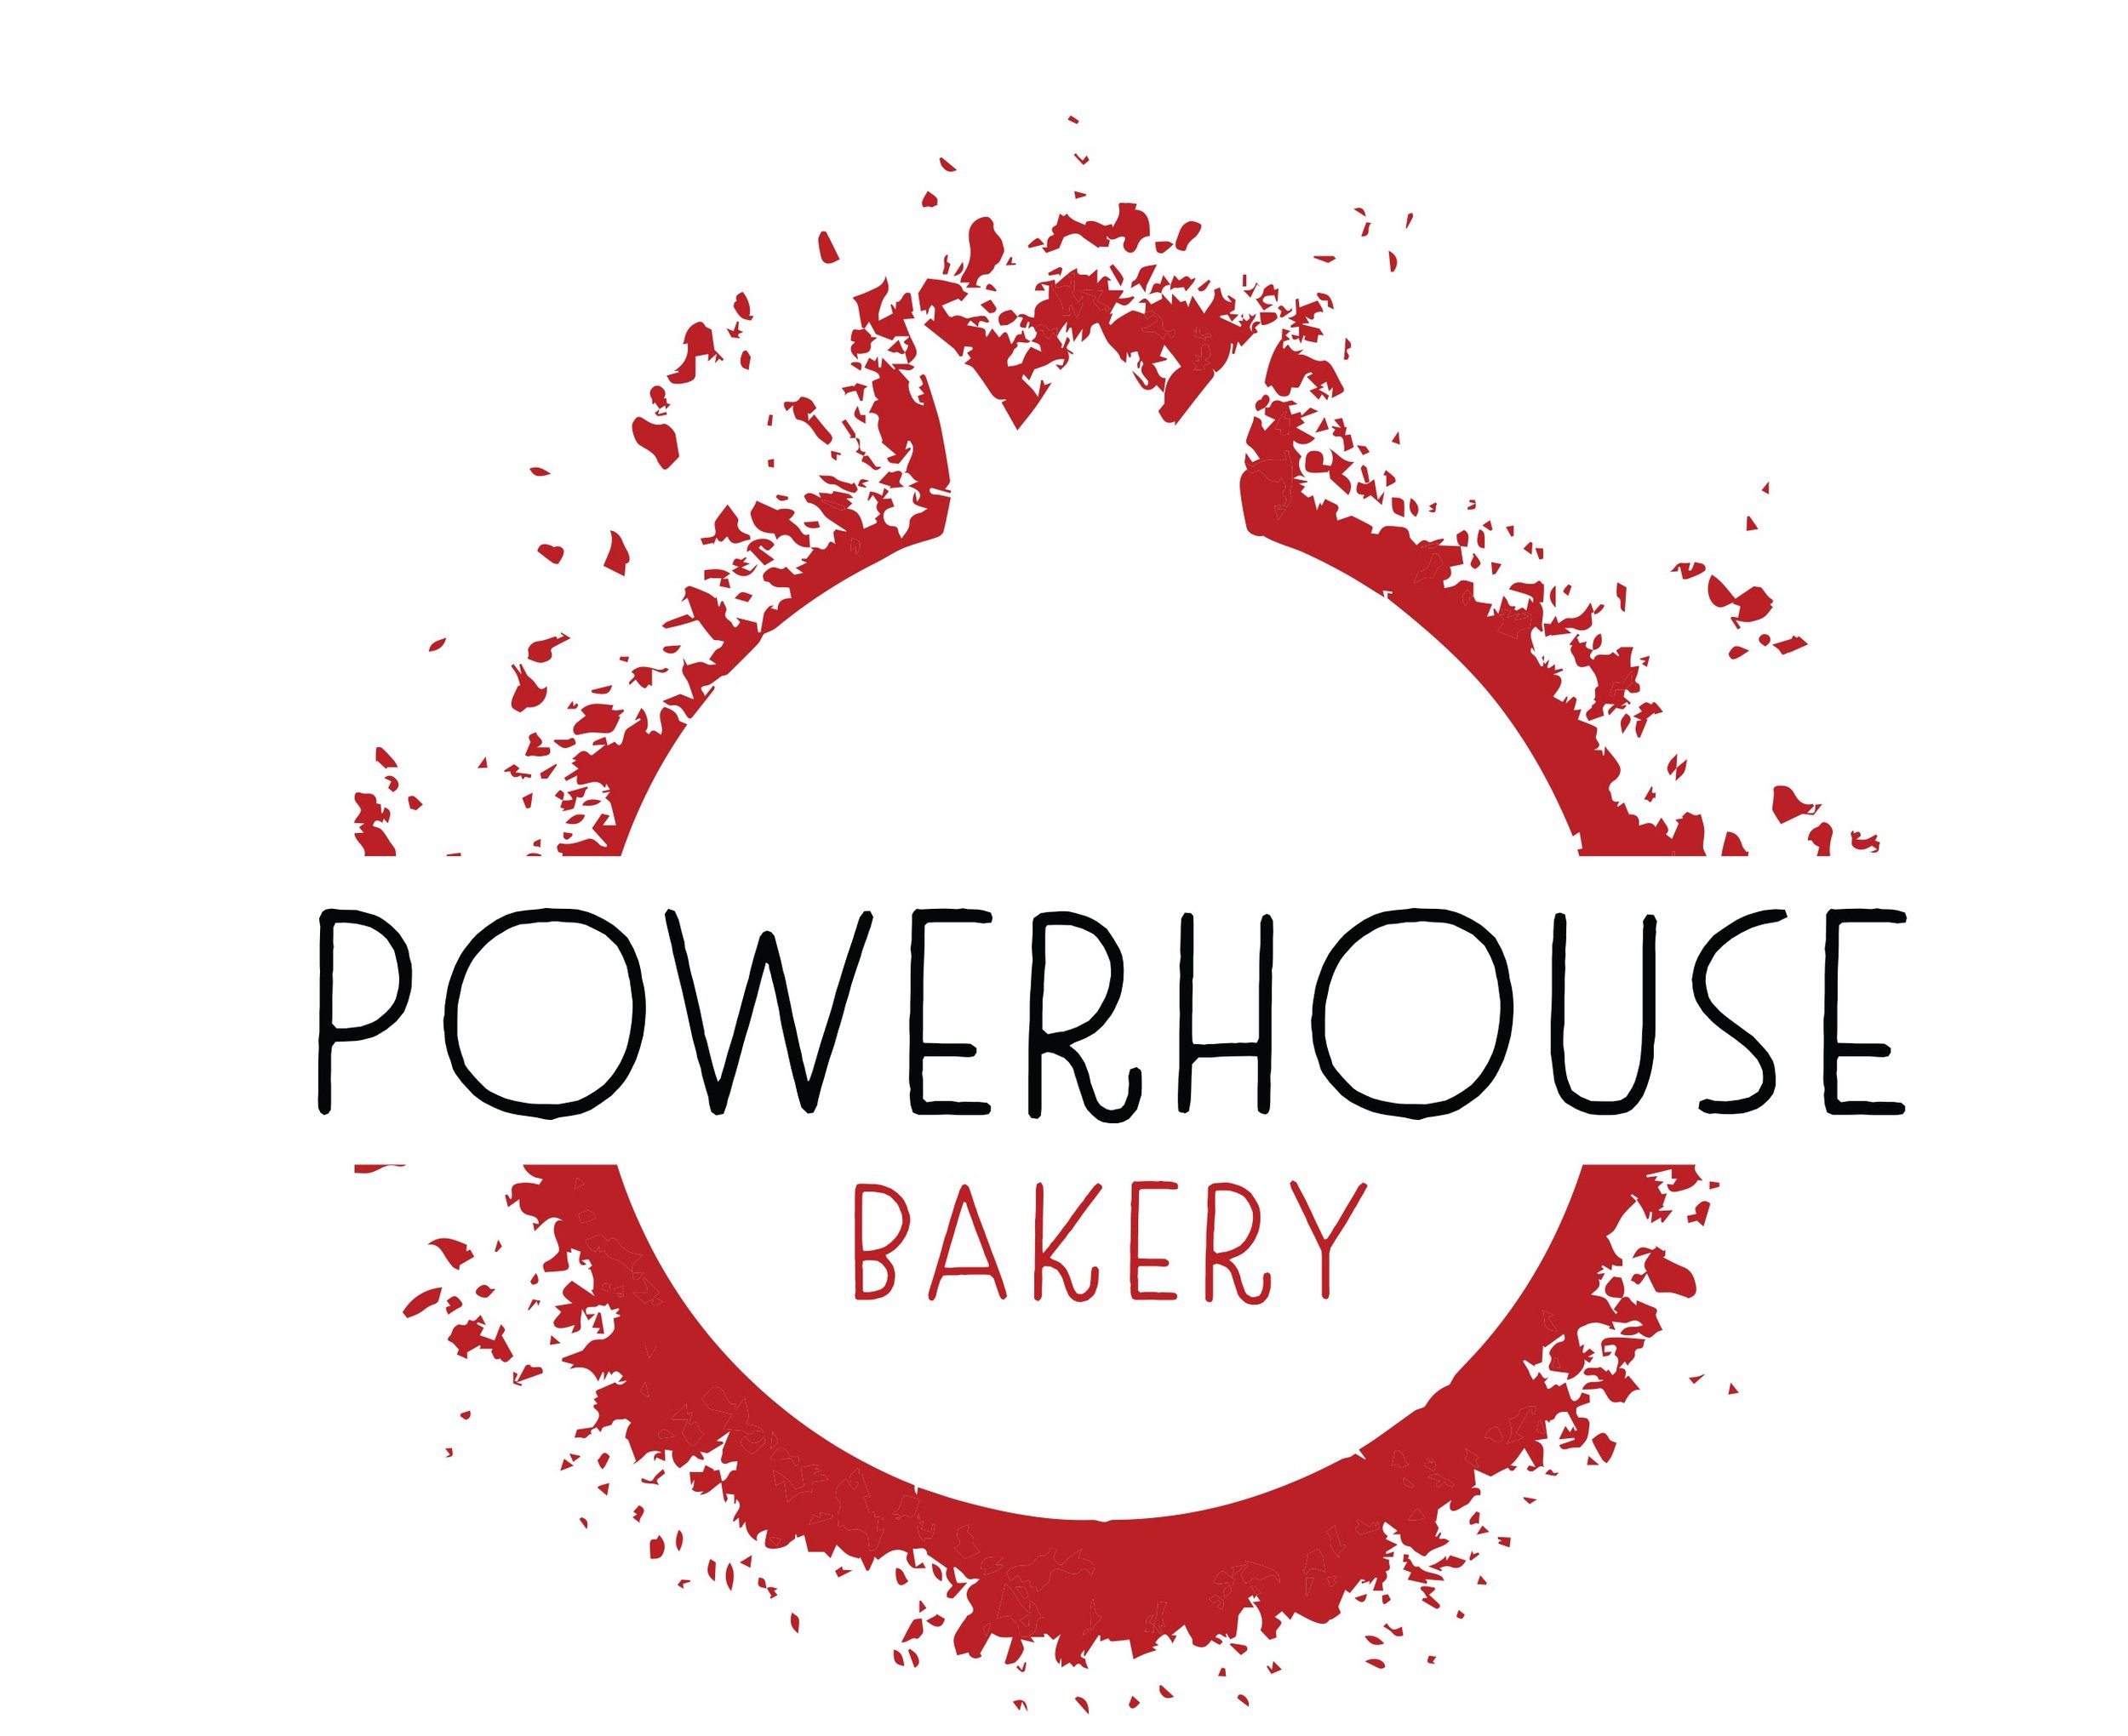 Powerhouse Bakery